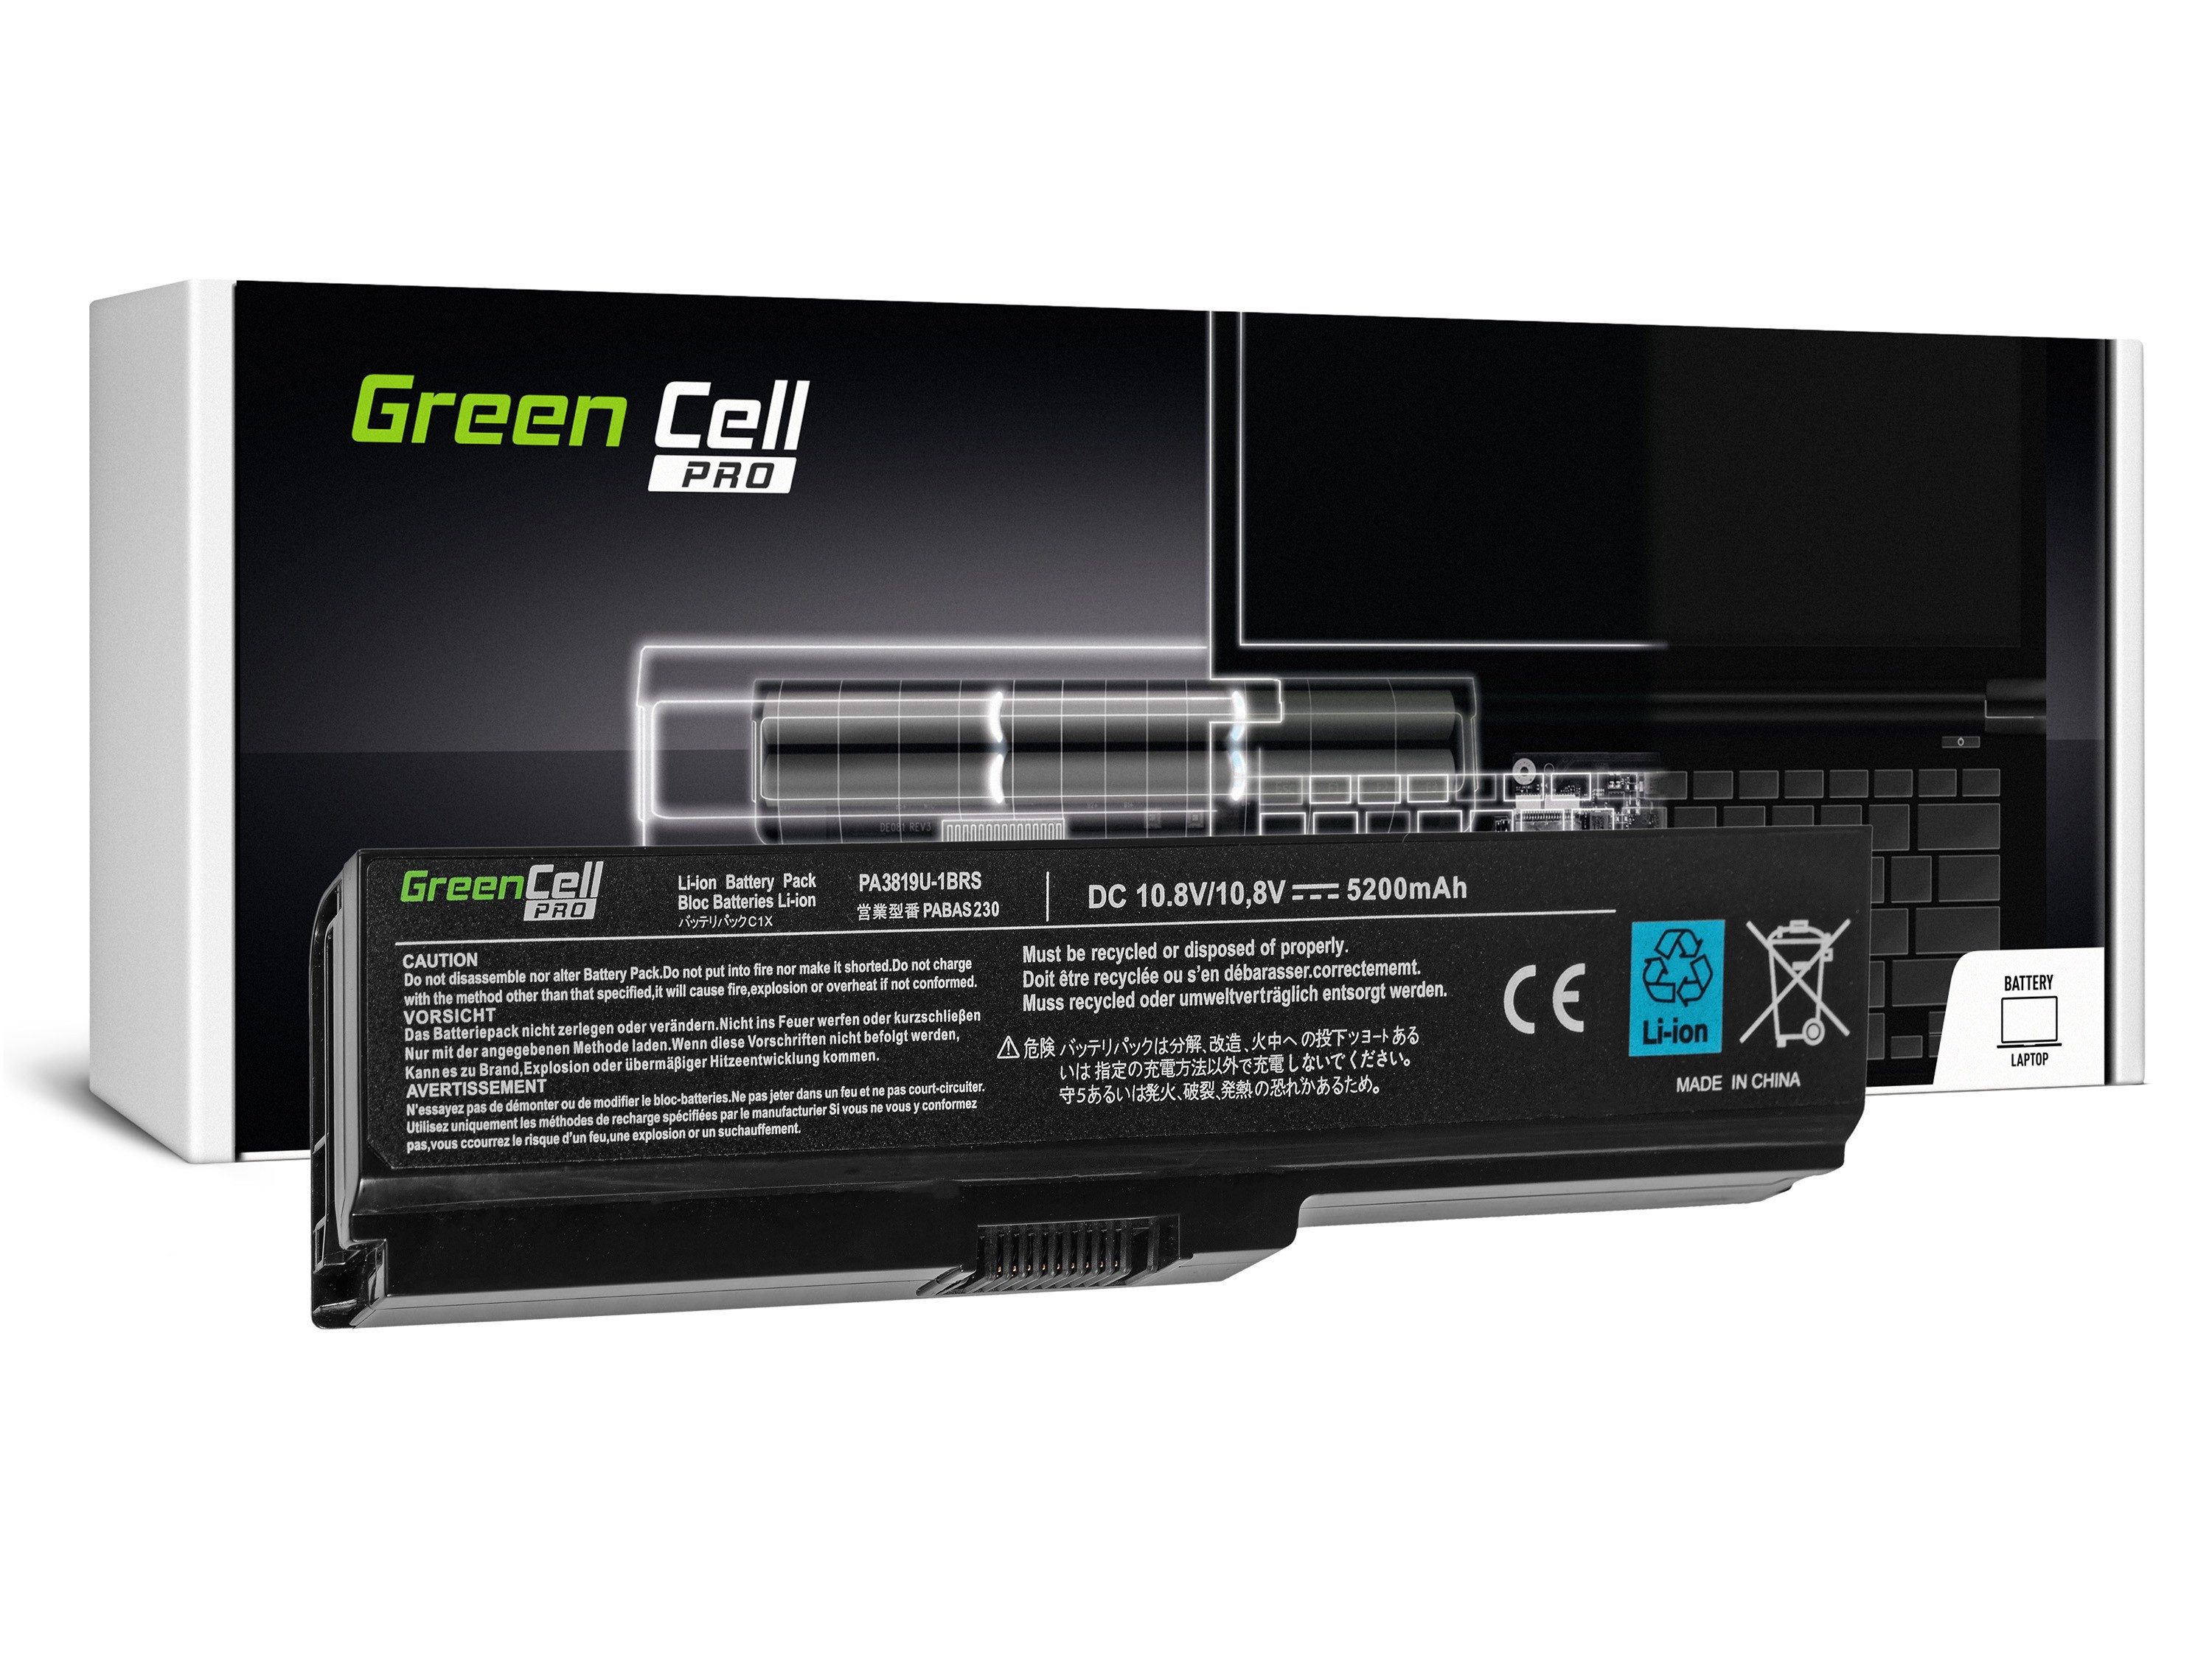 GREEN CELL PRO Laptop Battery for Toshiba Satellite C650 C650D C660D - 11.1V - 5200mAh